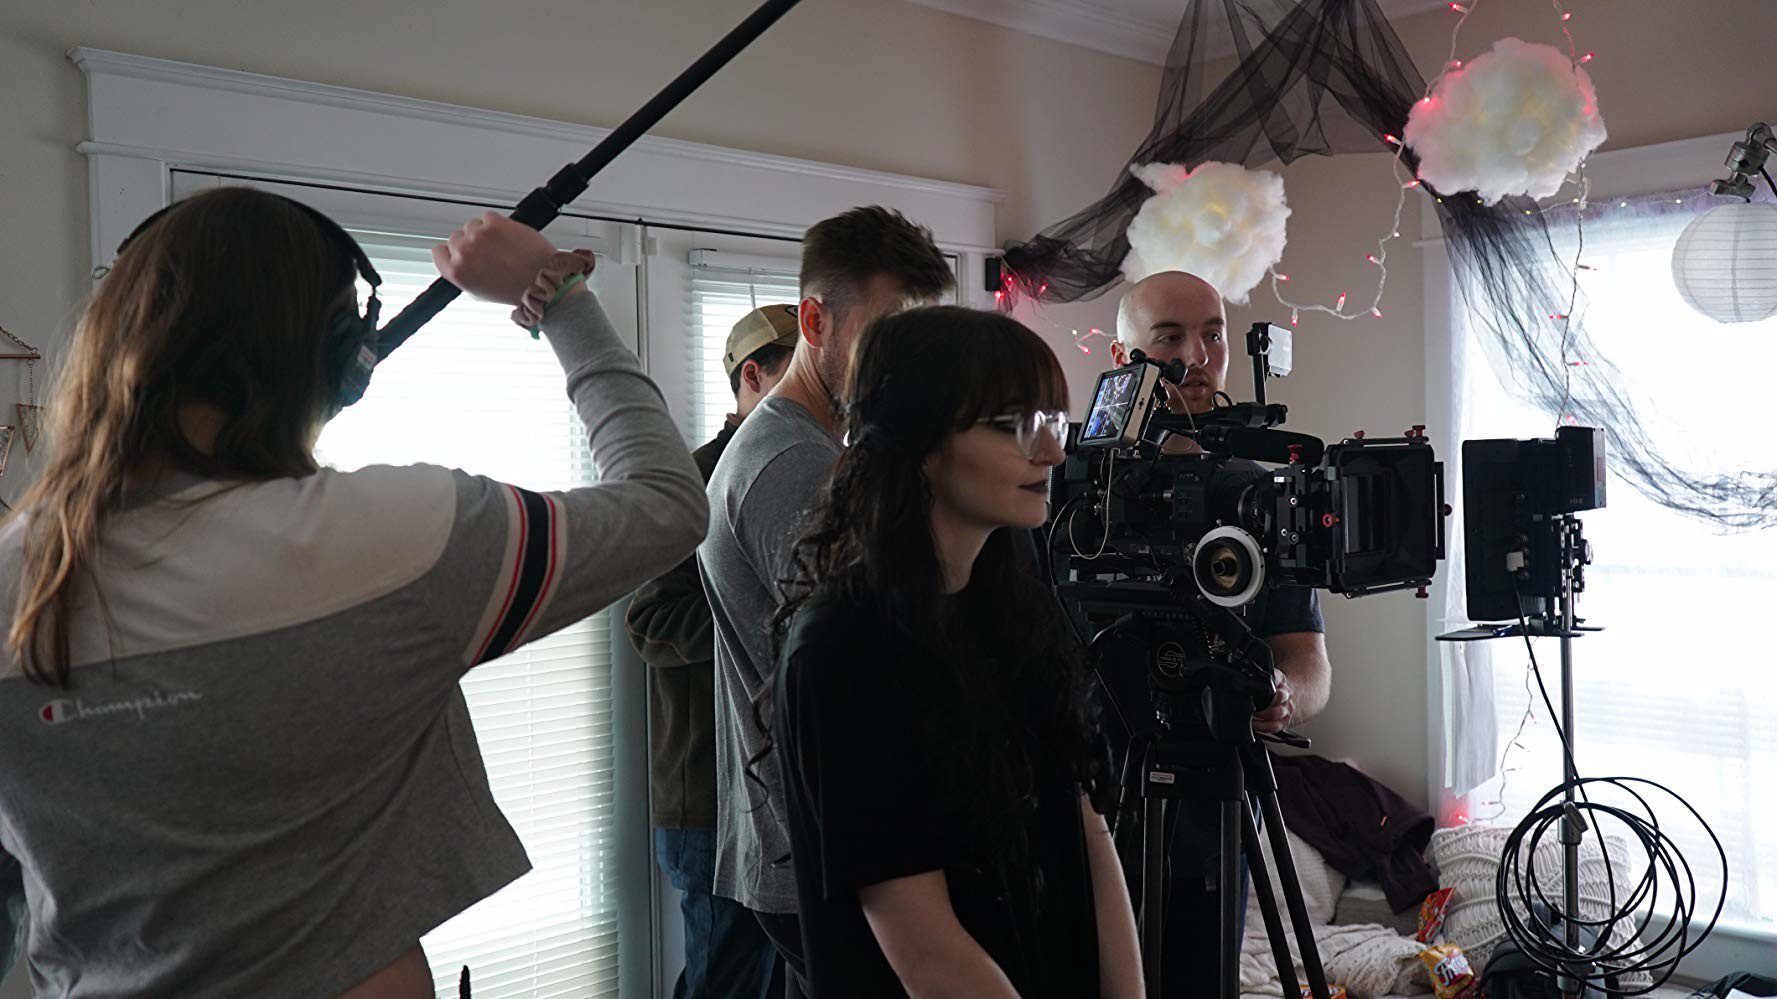 behind the scenes filming "Through the Door"